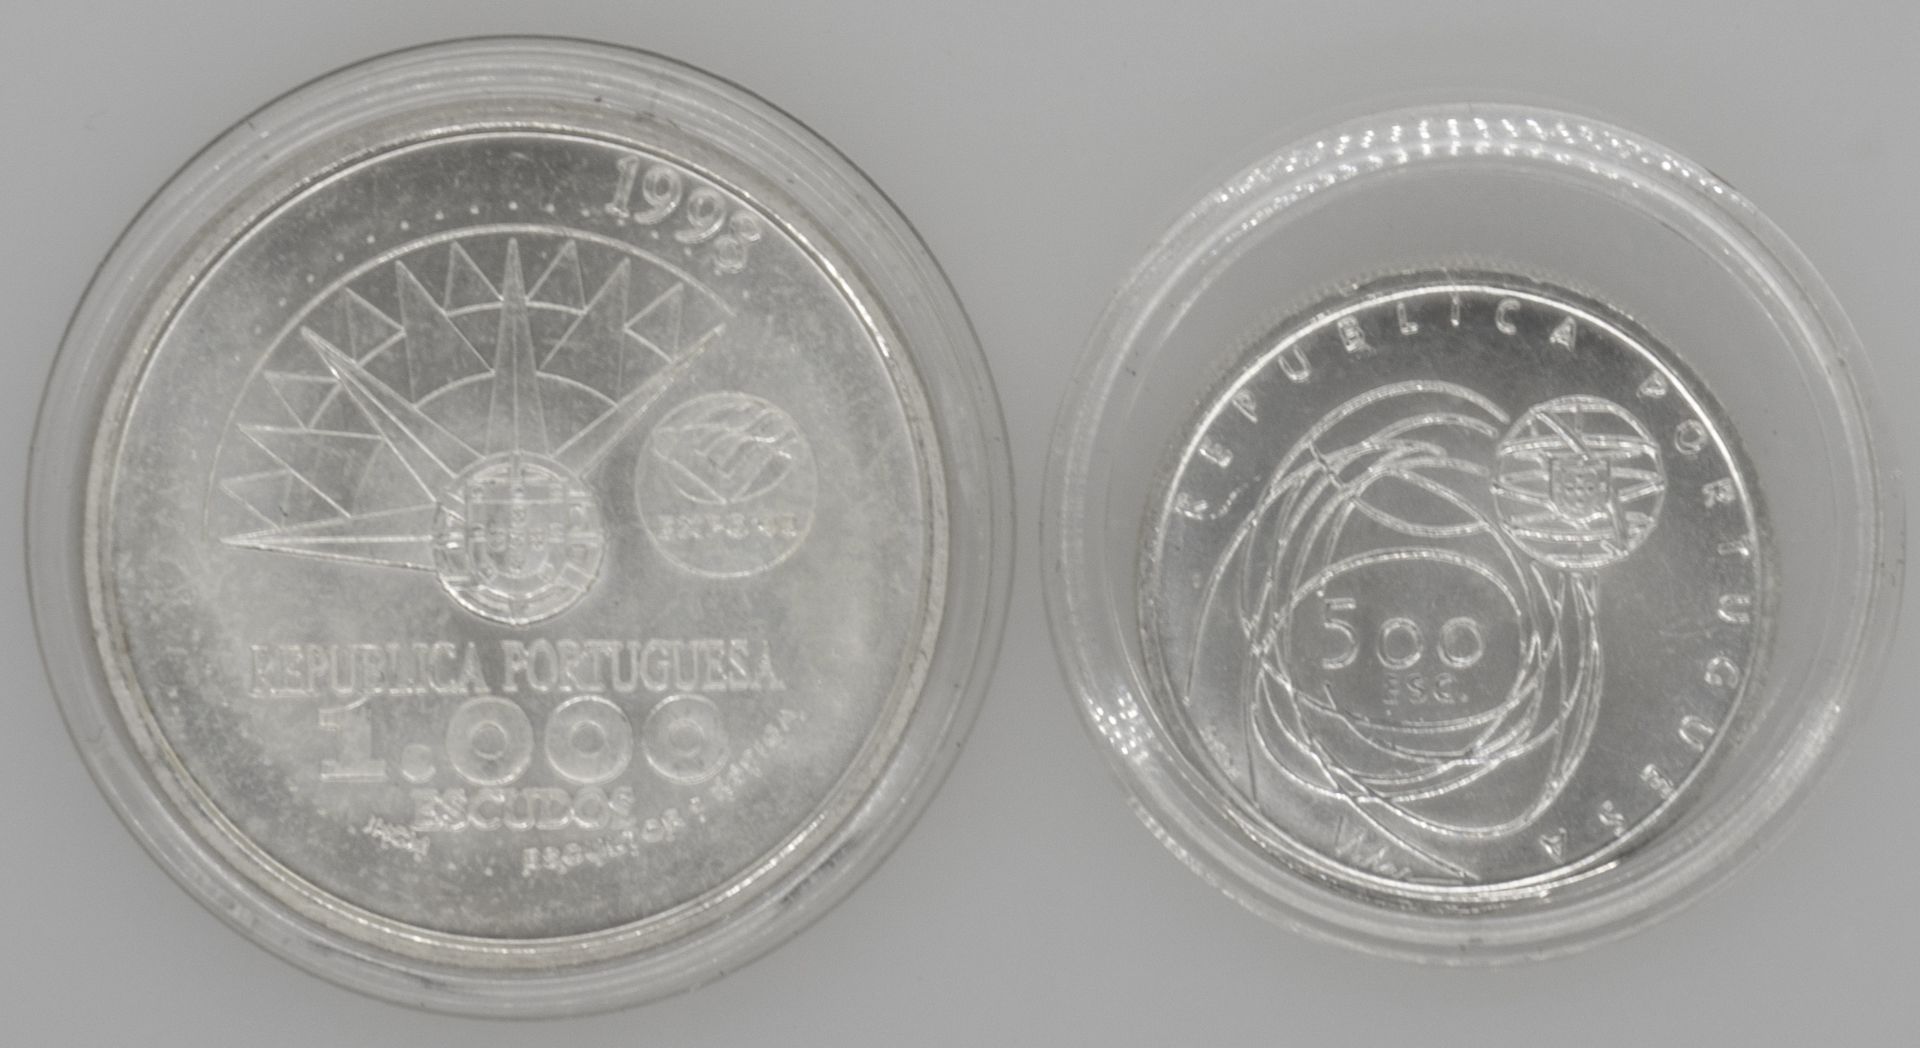 2 Silbermünzen Portugal, 1000 Escudos 1998 und 500 Escudos 2001 - Image 2 of 2